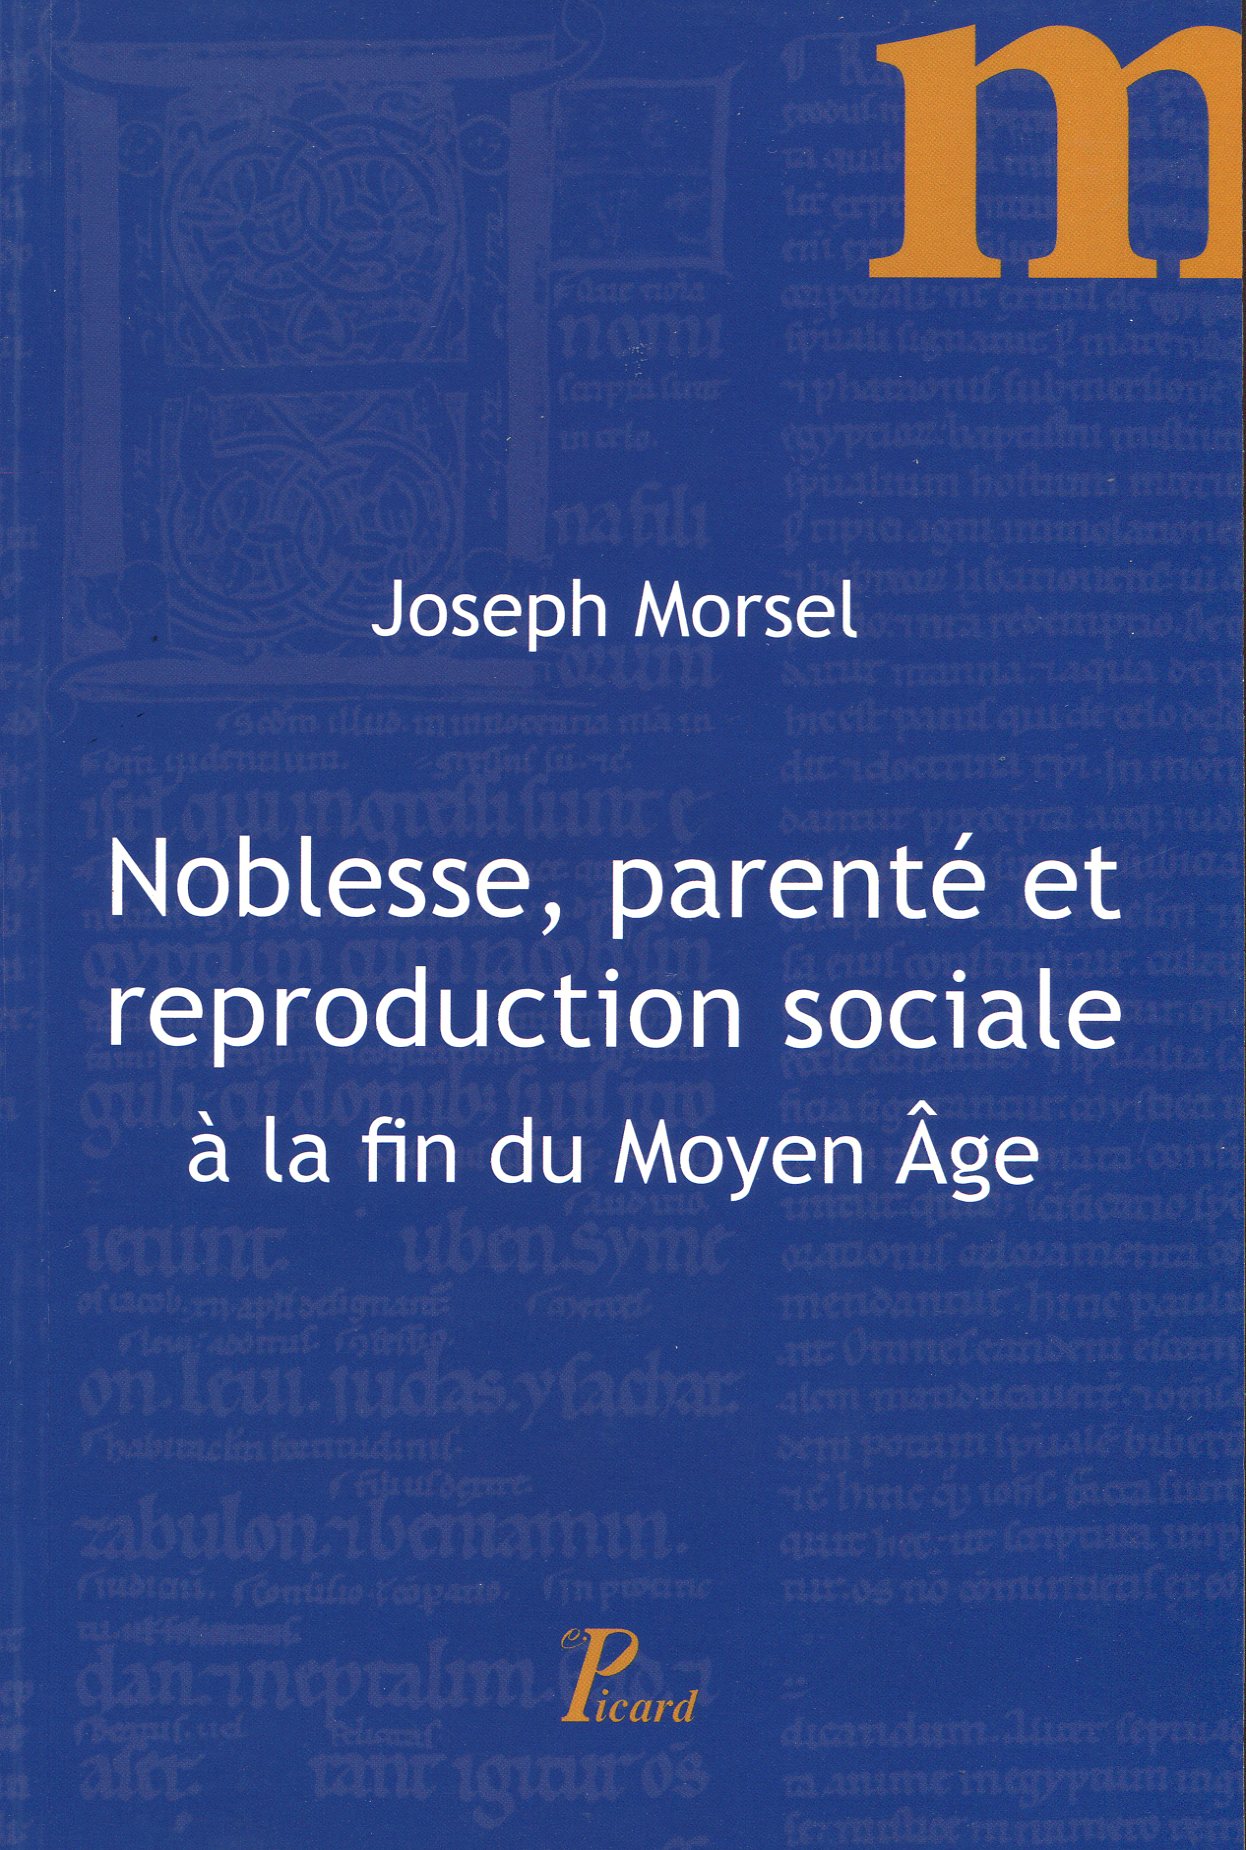 Noblesse, parenté et reproduction sociale à la fin du Moyen Age, 2017, 158 p.